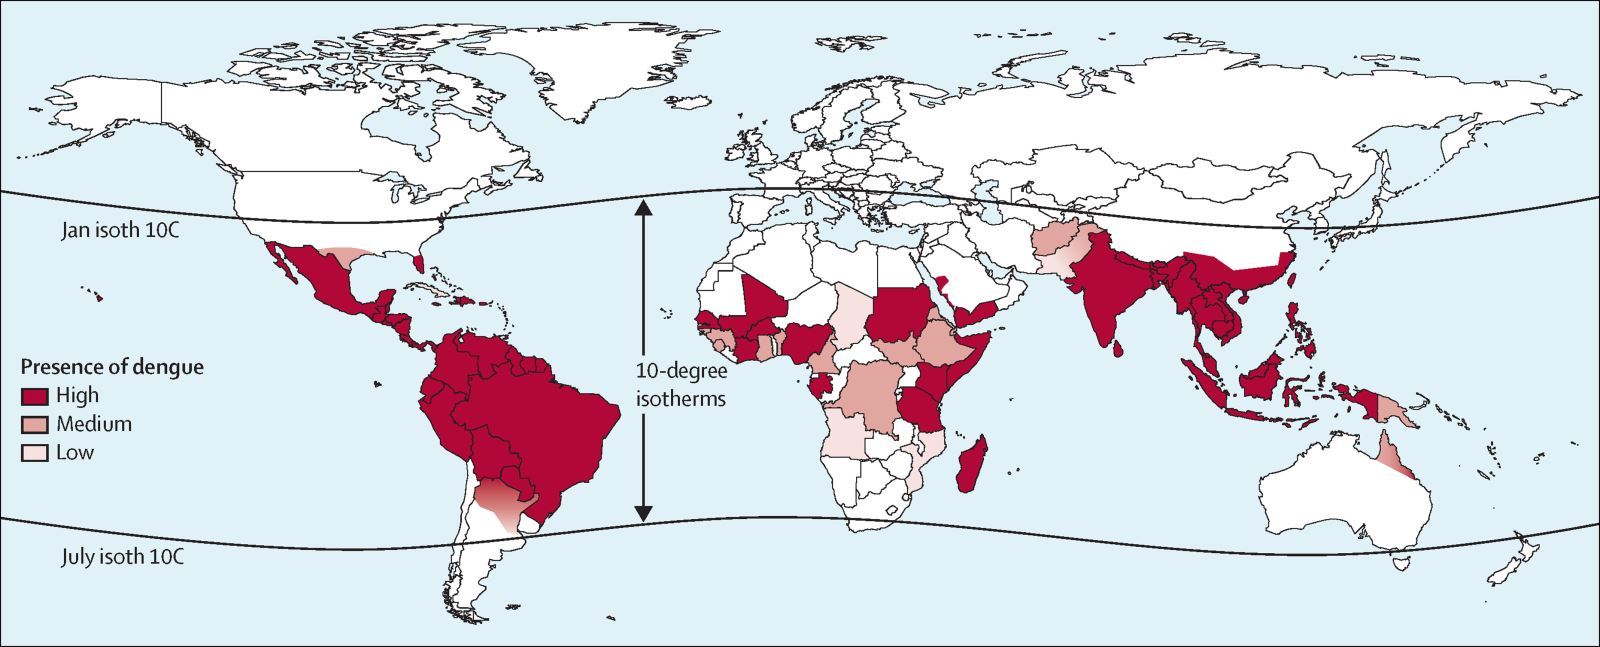 Celosvětový výskyt Dengue